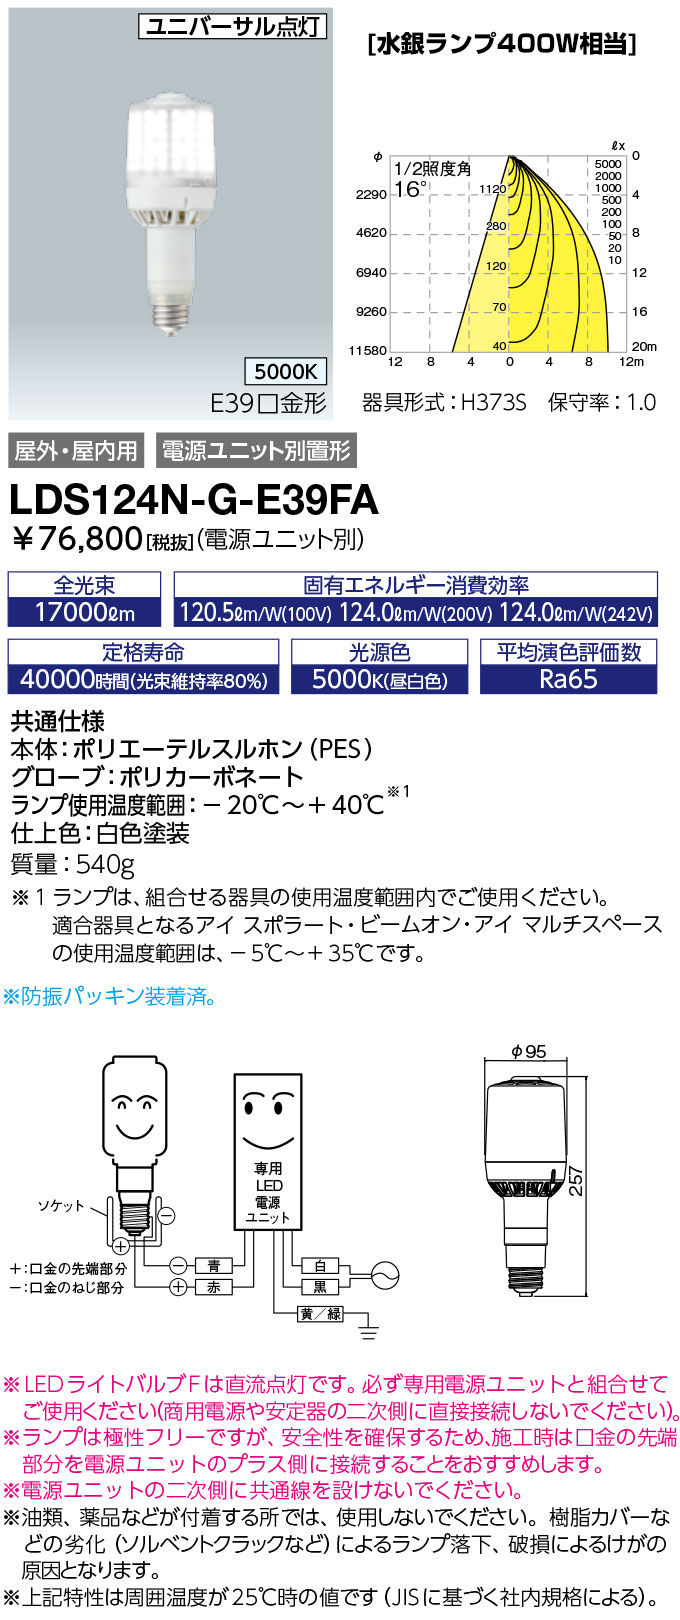 LDS124N-G-E39FA ランプ レディオック LEDライトバルブF水銀ランプ400W相当 極性フリー E39口金 124W  昼白色岩崎電気 ランプ タカラショップ